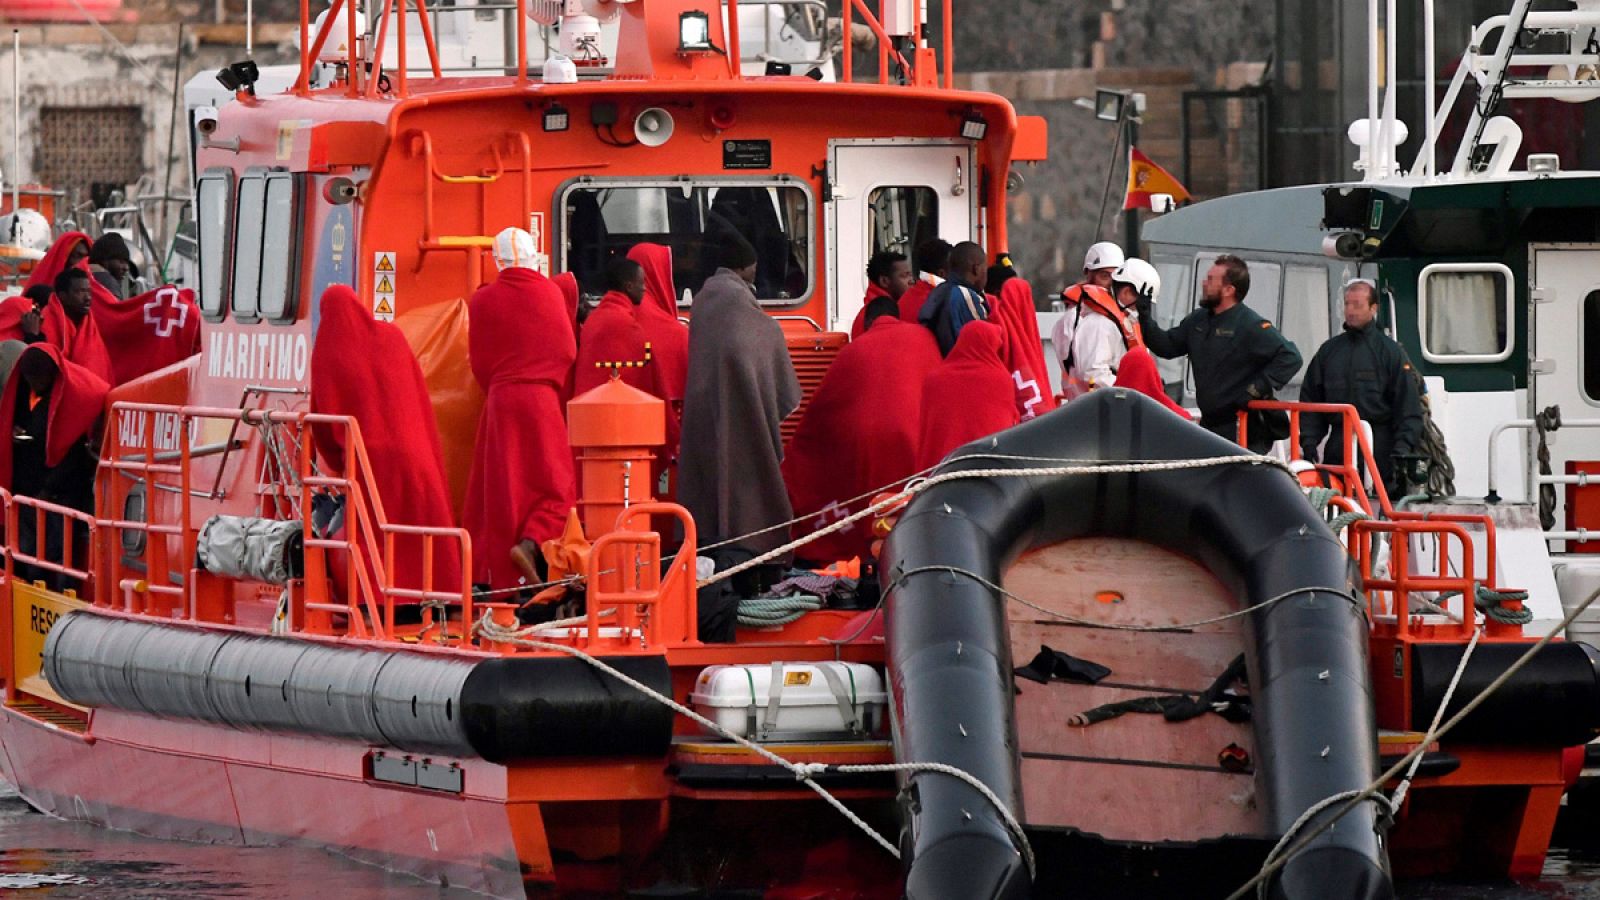 Llegan al puerto de Almería 34 personas rescatadas de una patera por Salvamento Marítimo (16/01/2018)